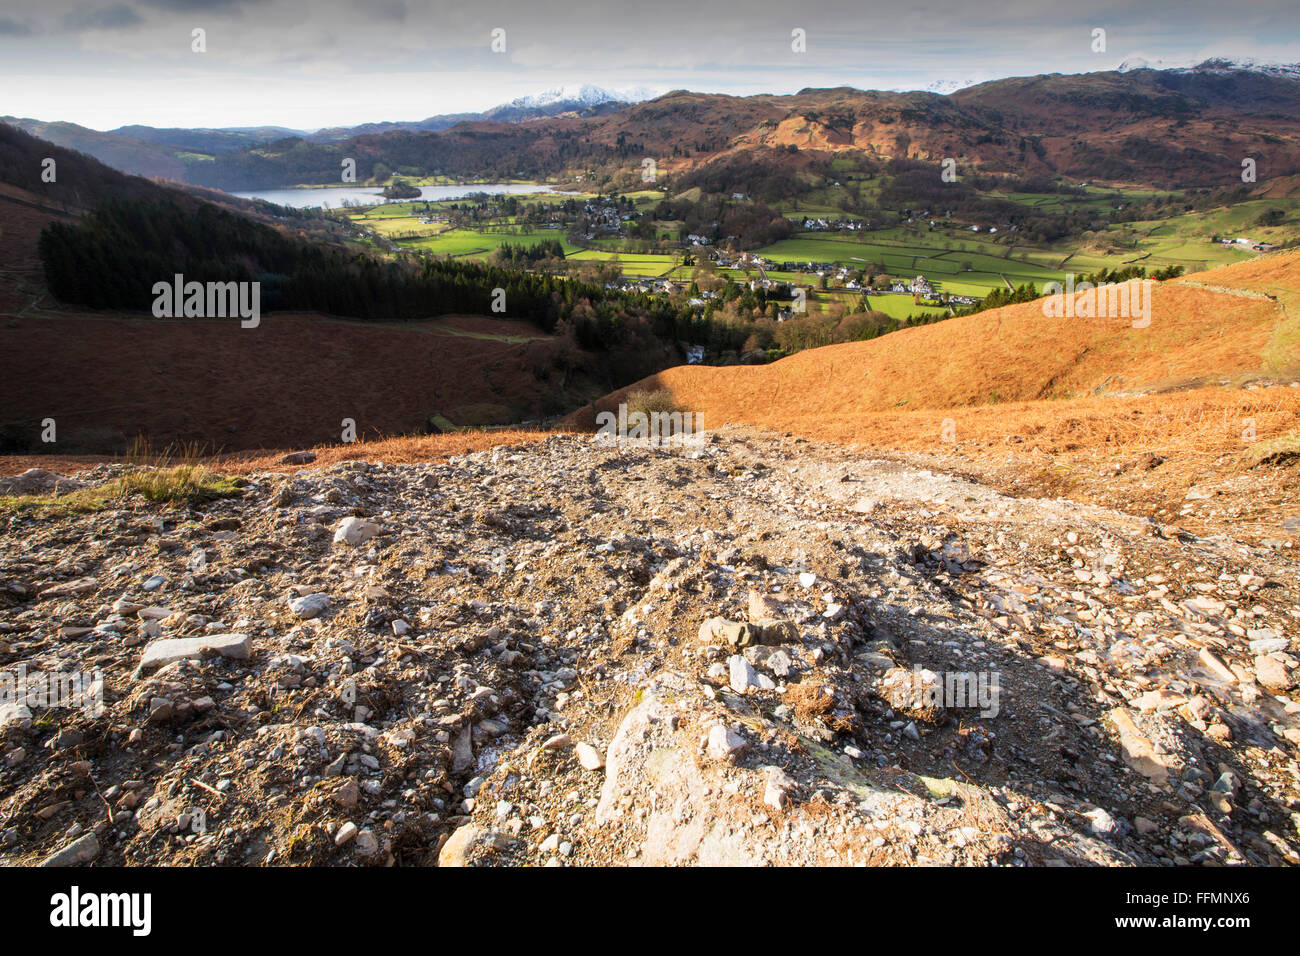 Sturm-Desmond verwüsteten ganz Cumbria mit Überschwemmungen und Zerstörung. Super gesättigten Boden vielerorts Erdrutsch Narben auf vielen der Fellsides versäumt, dieses ist auf Stein Arthur über Grasmere, Lake District, Großbritannien. Stockfoto